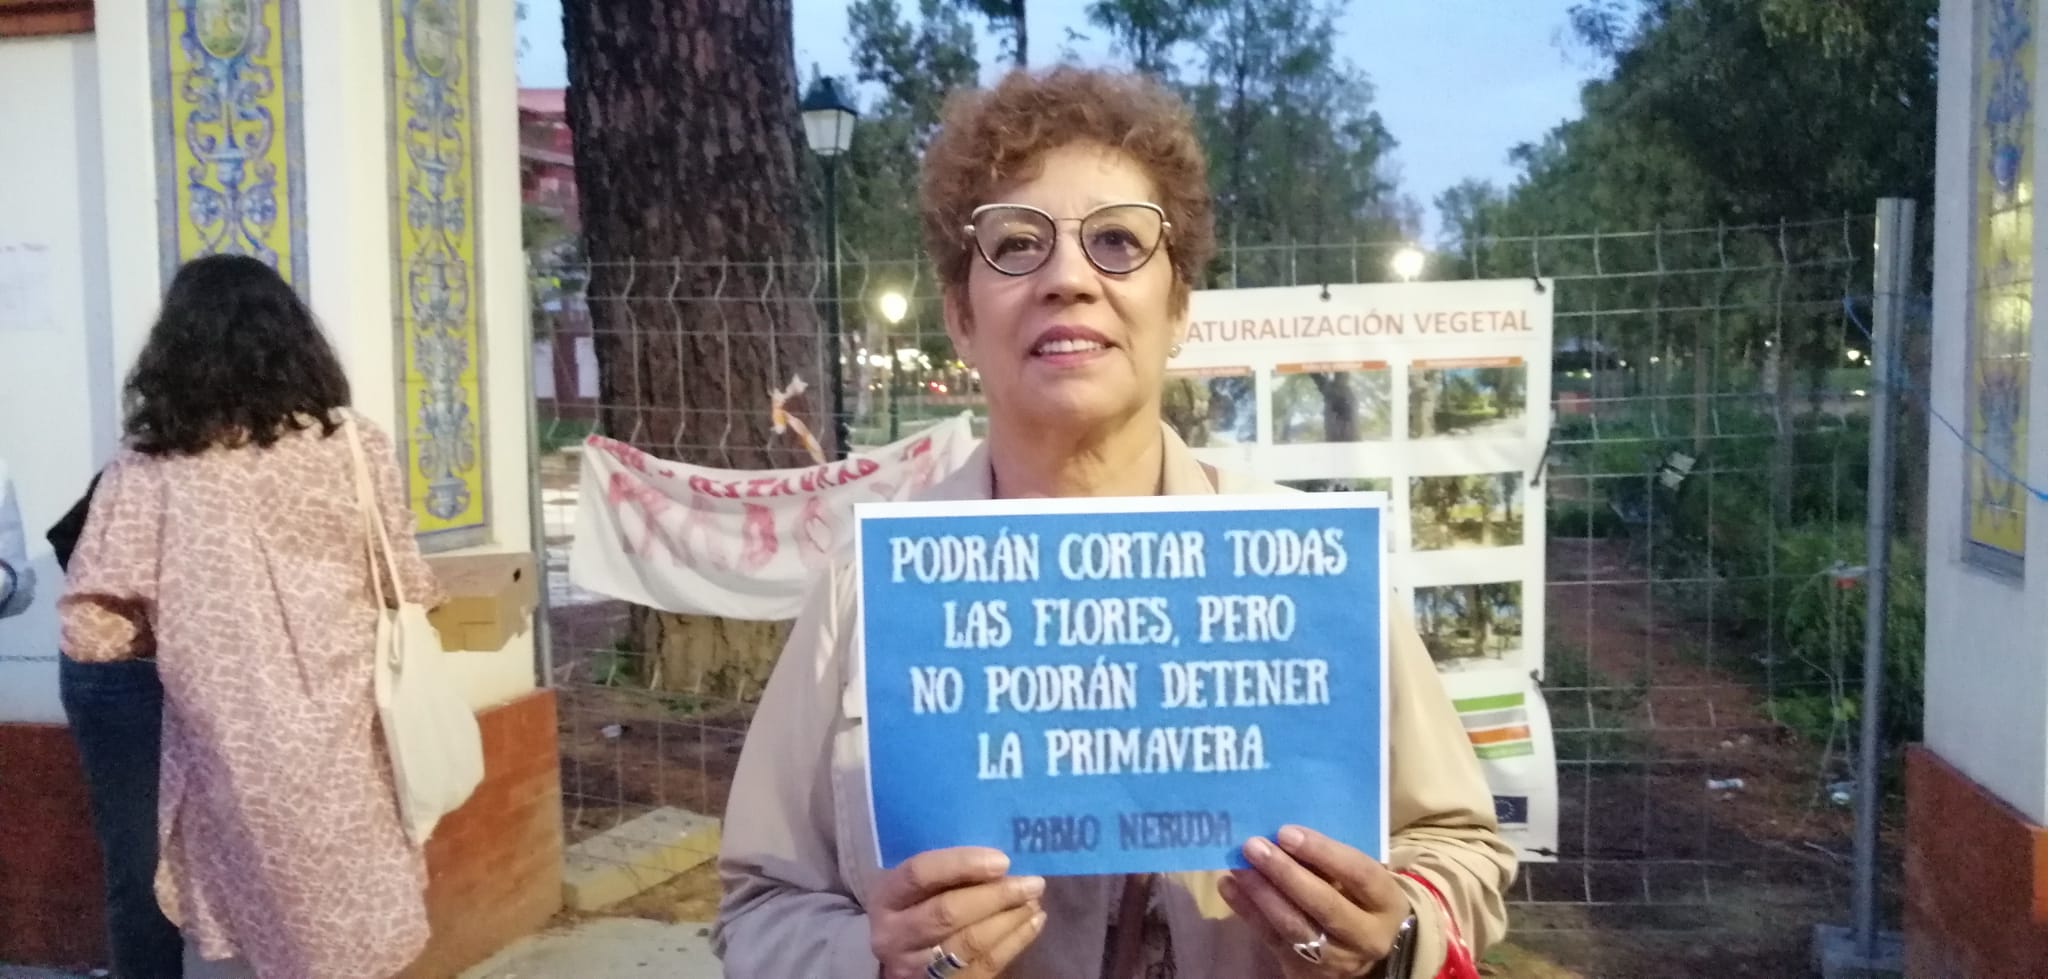 Una protesta ciudadana marca el primer día de las fiestas de Talavera de la Reina: "El Prado no sé pierde, el Prado se defiende"